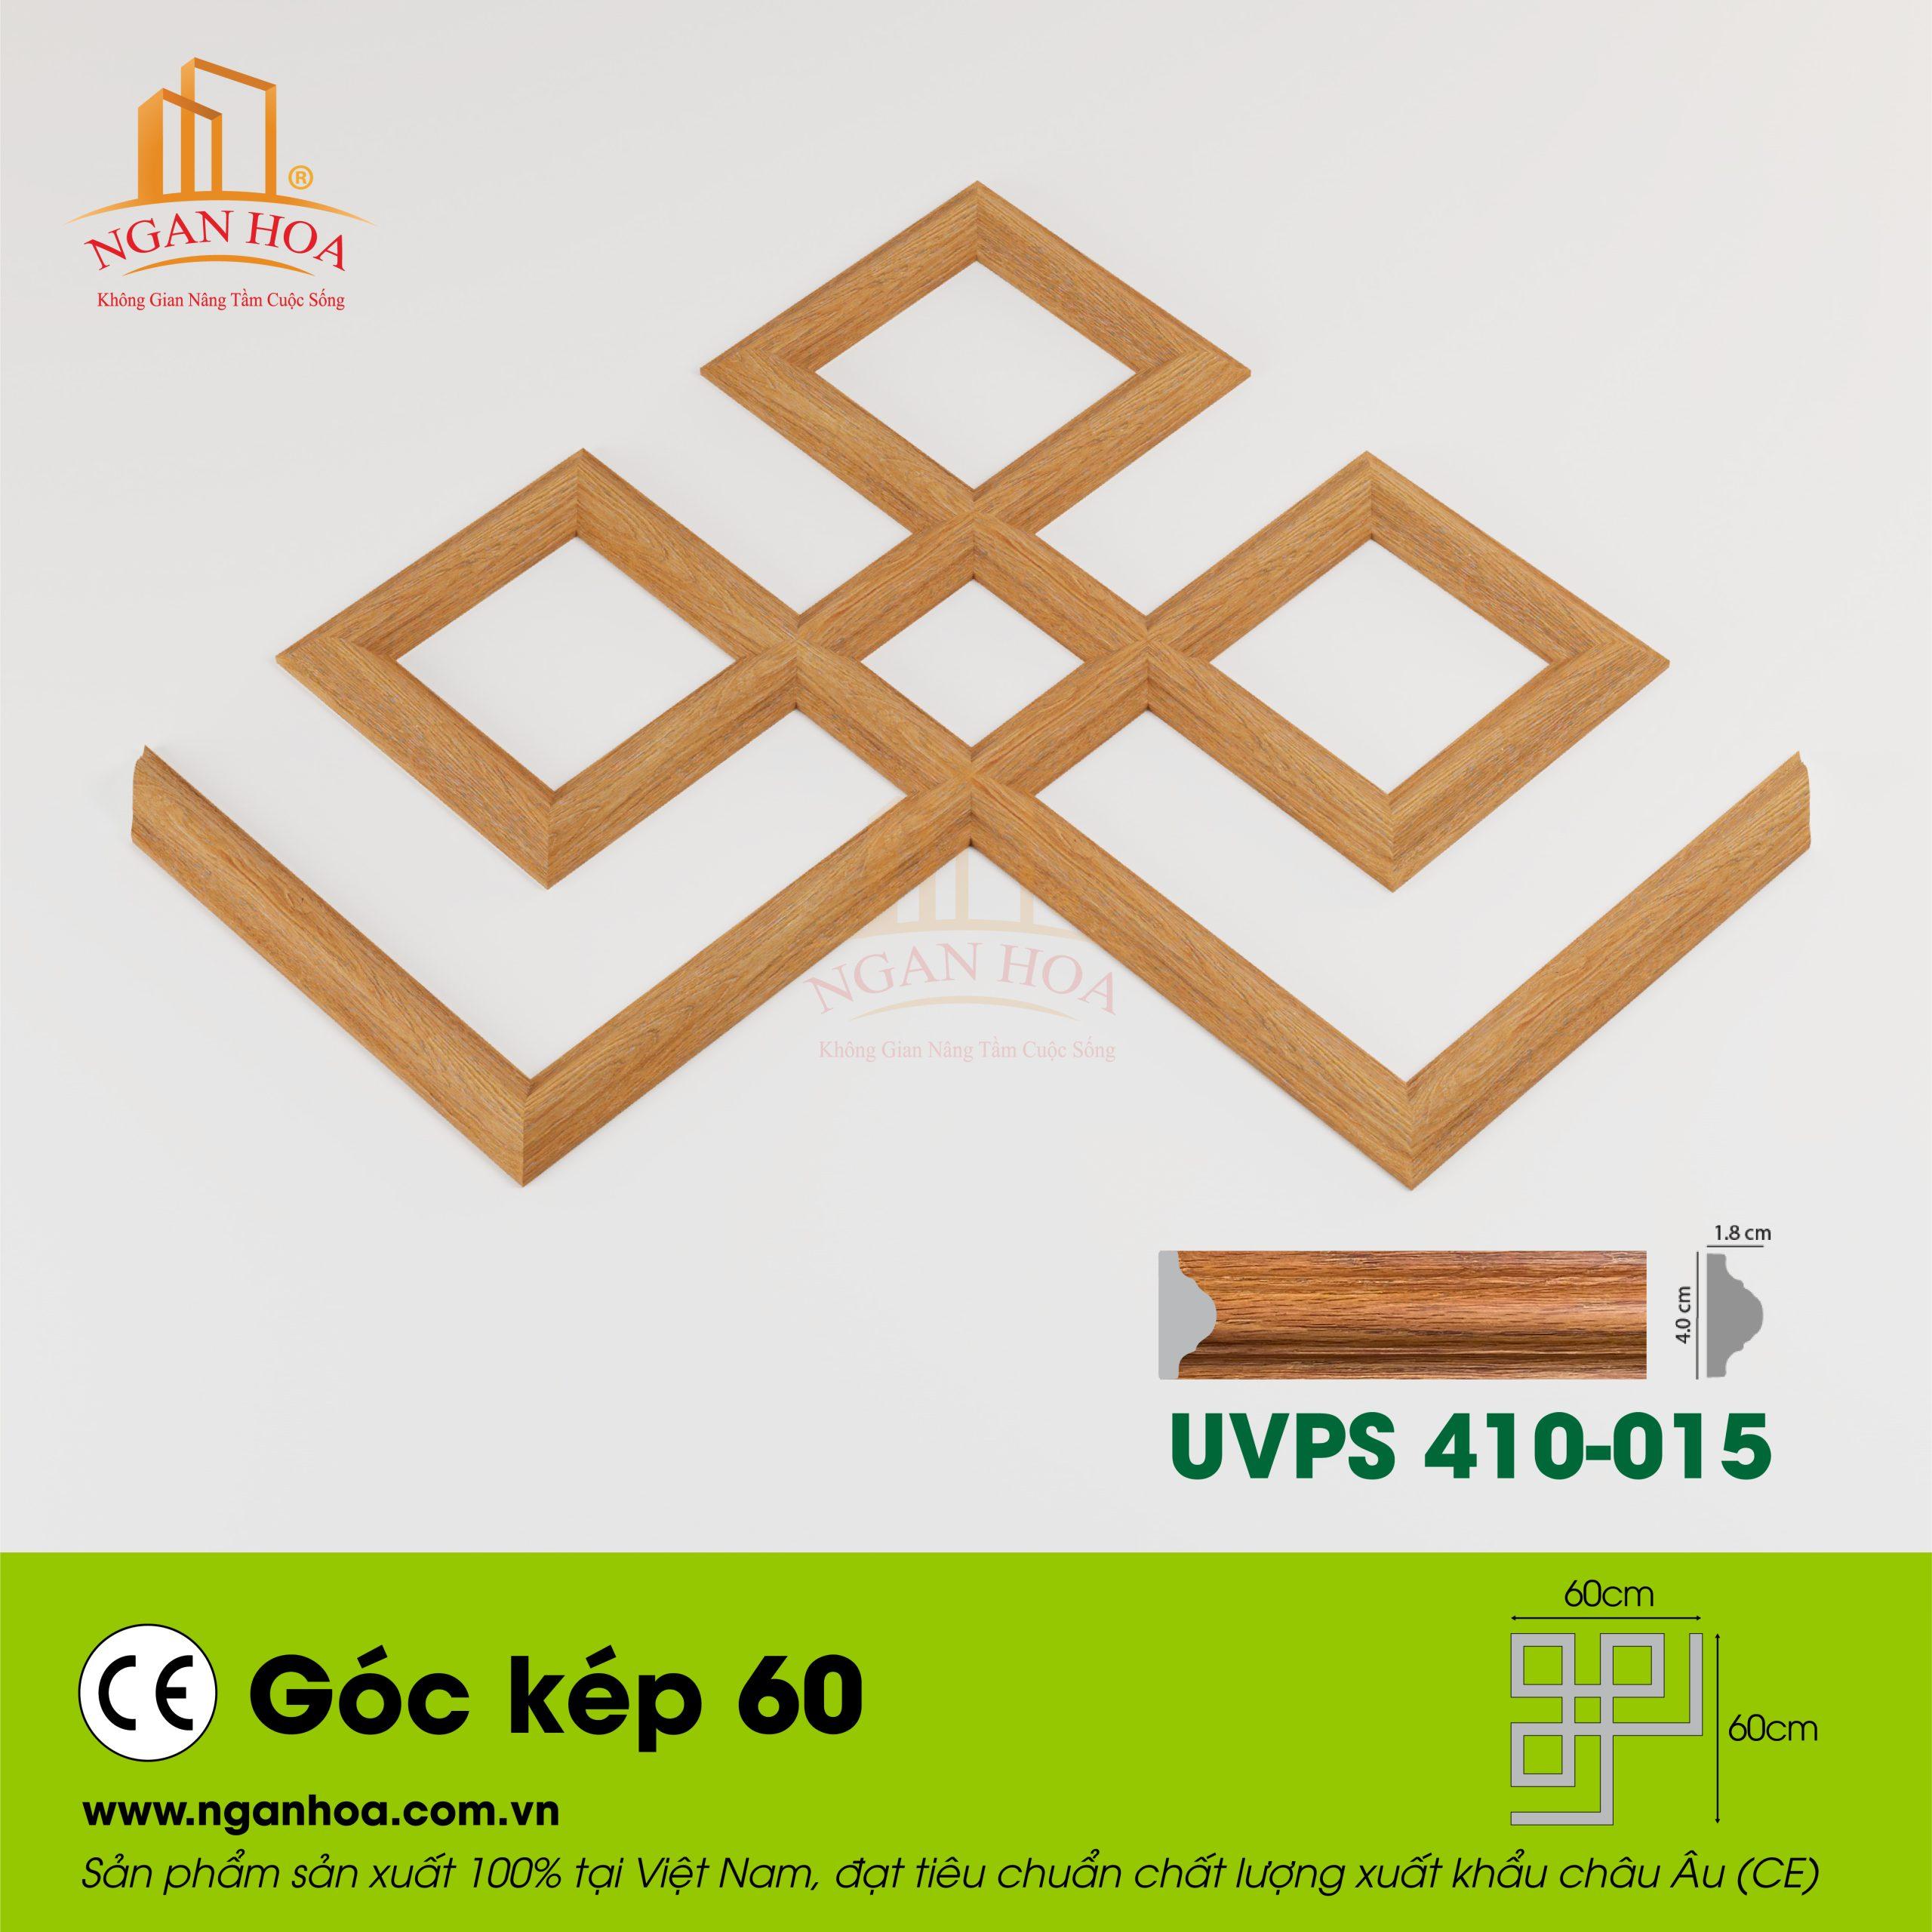 Goc kep 60 UVPS 410 015 scaled